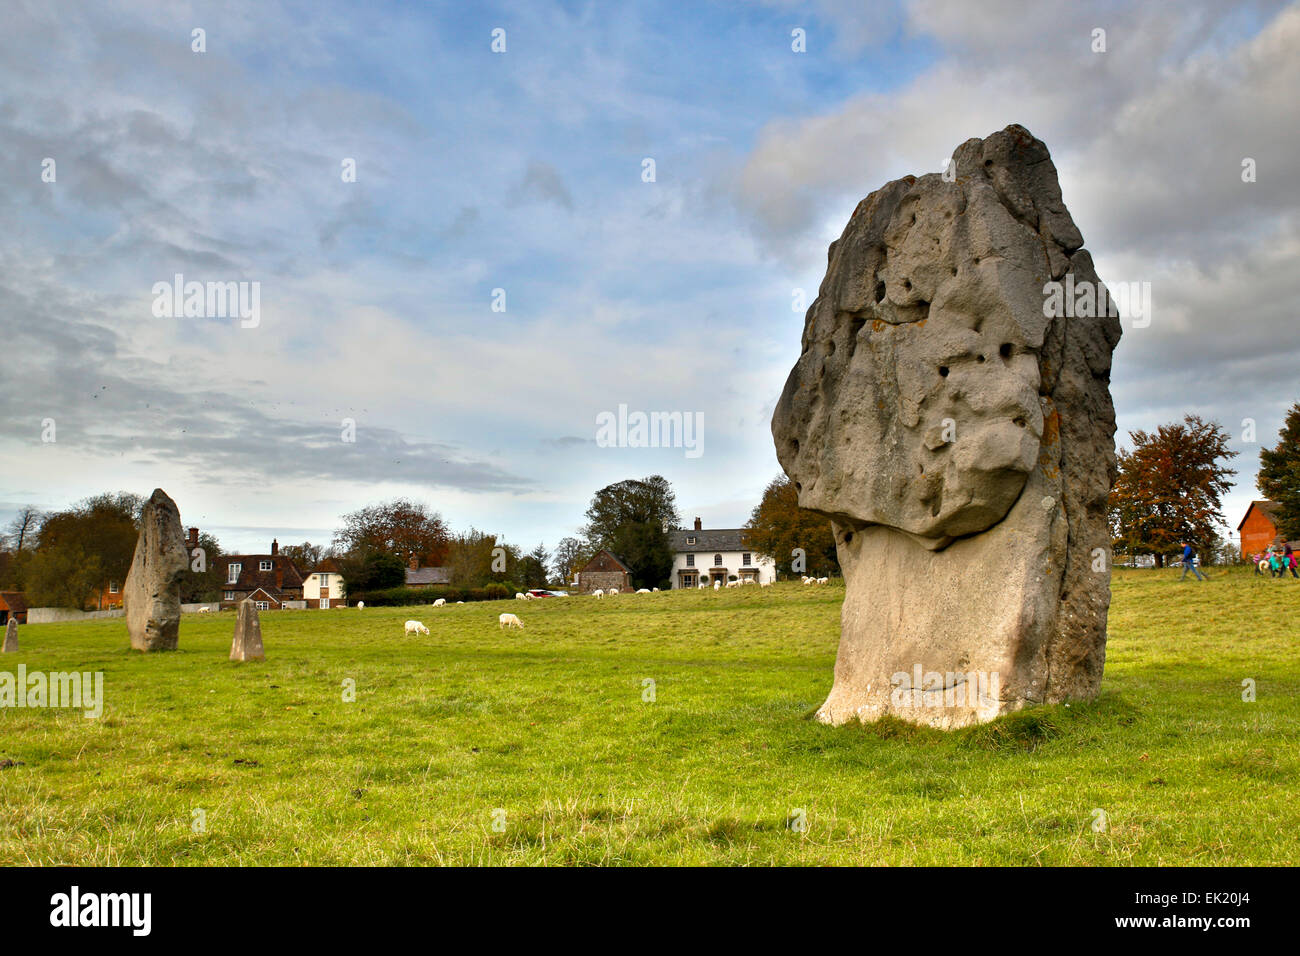 Monument d'Avebury Wiltshire, UK Banque D'Images